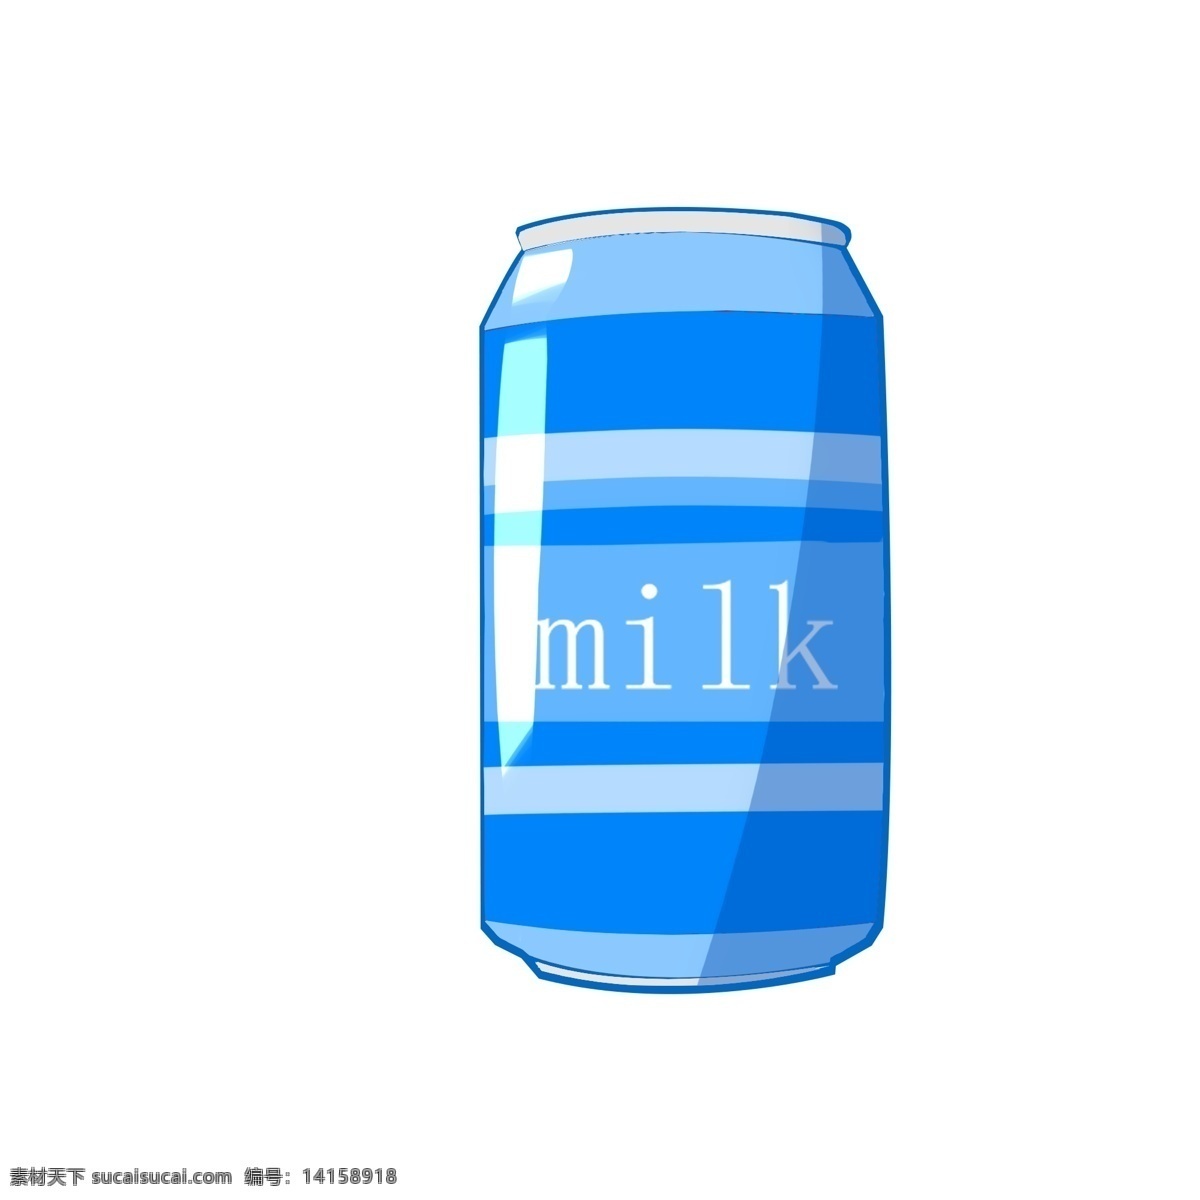 milk牛奶 milk 牛奶 蓝色 罐头 夏日 清爽 简单